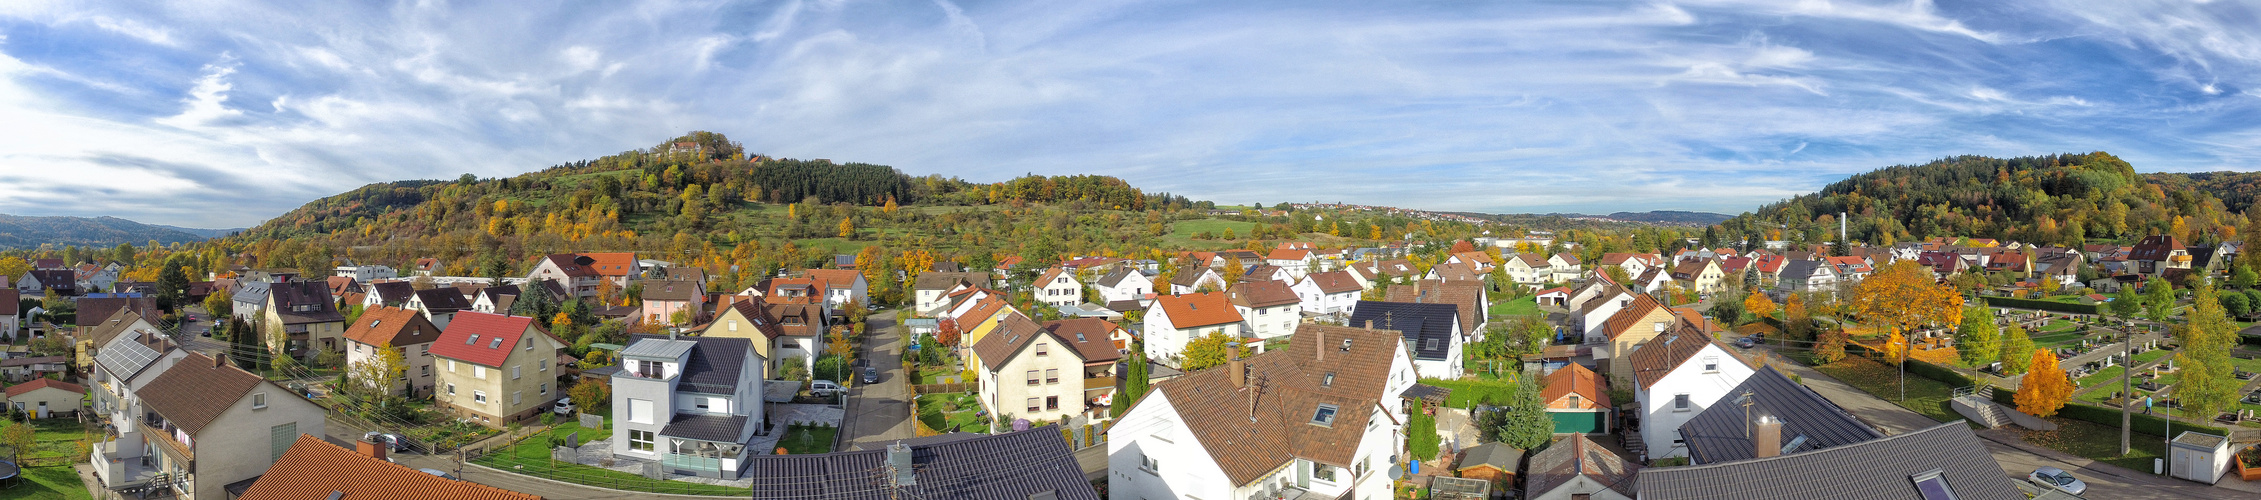 Waldhausen 2015